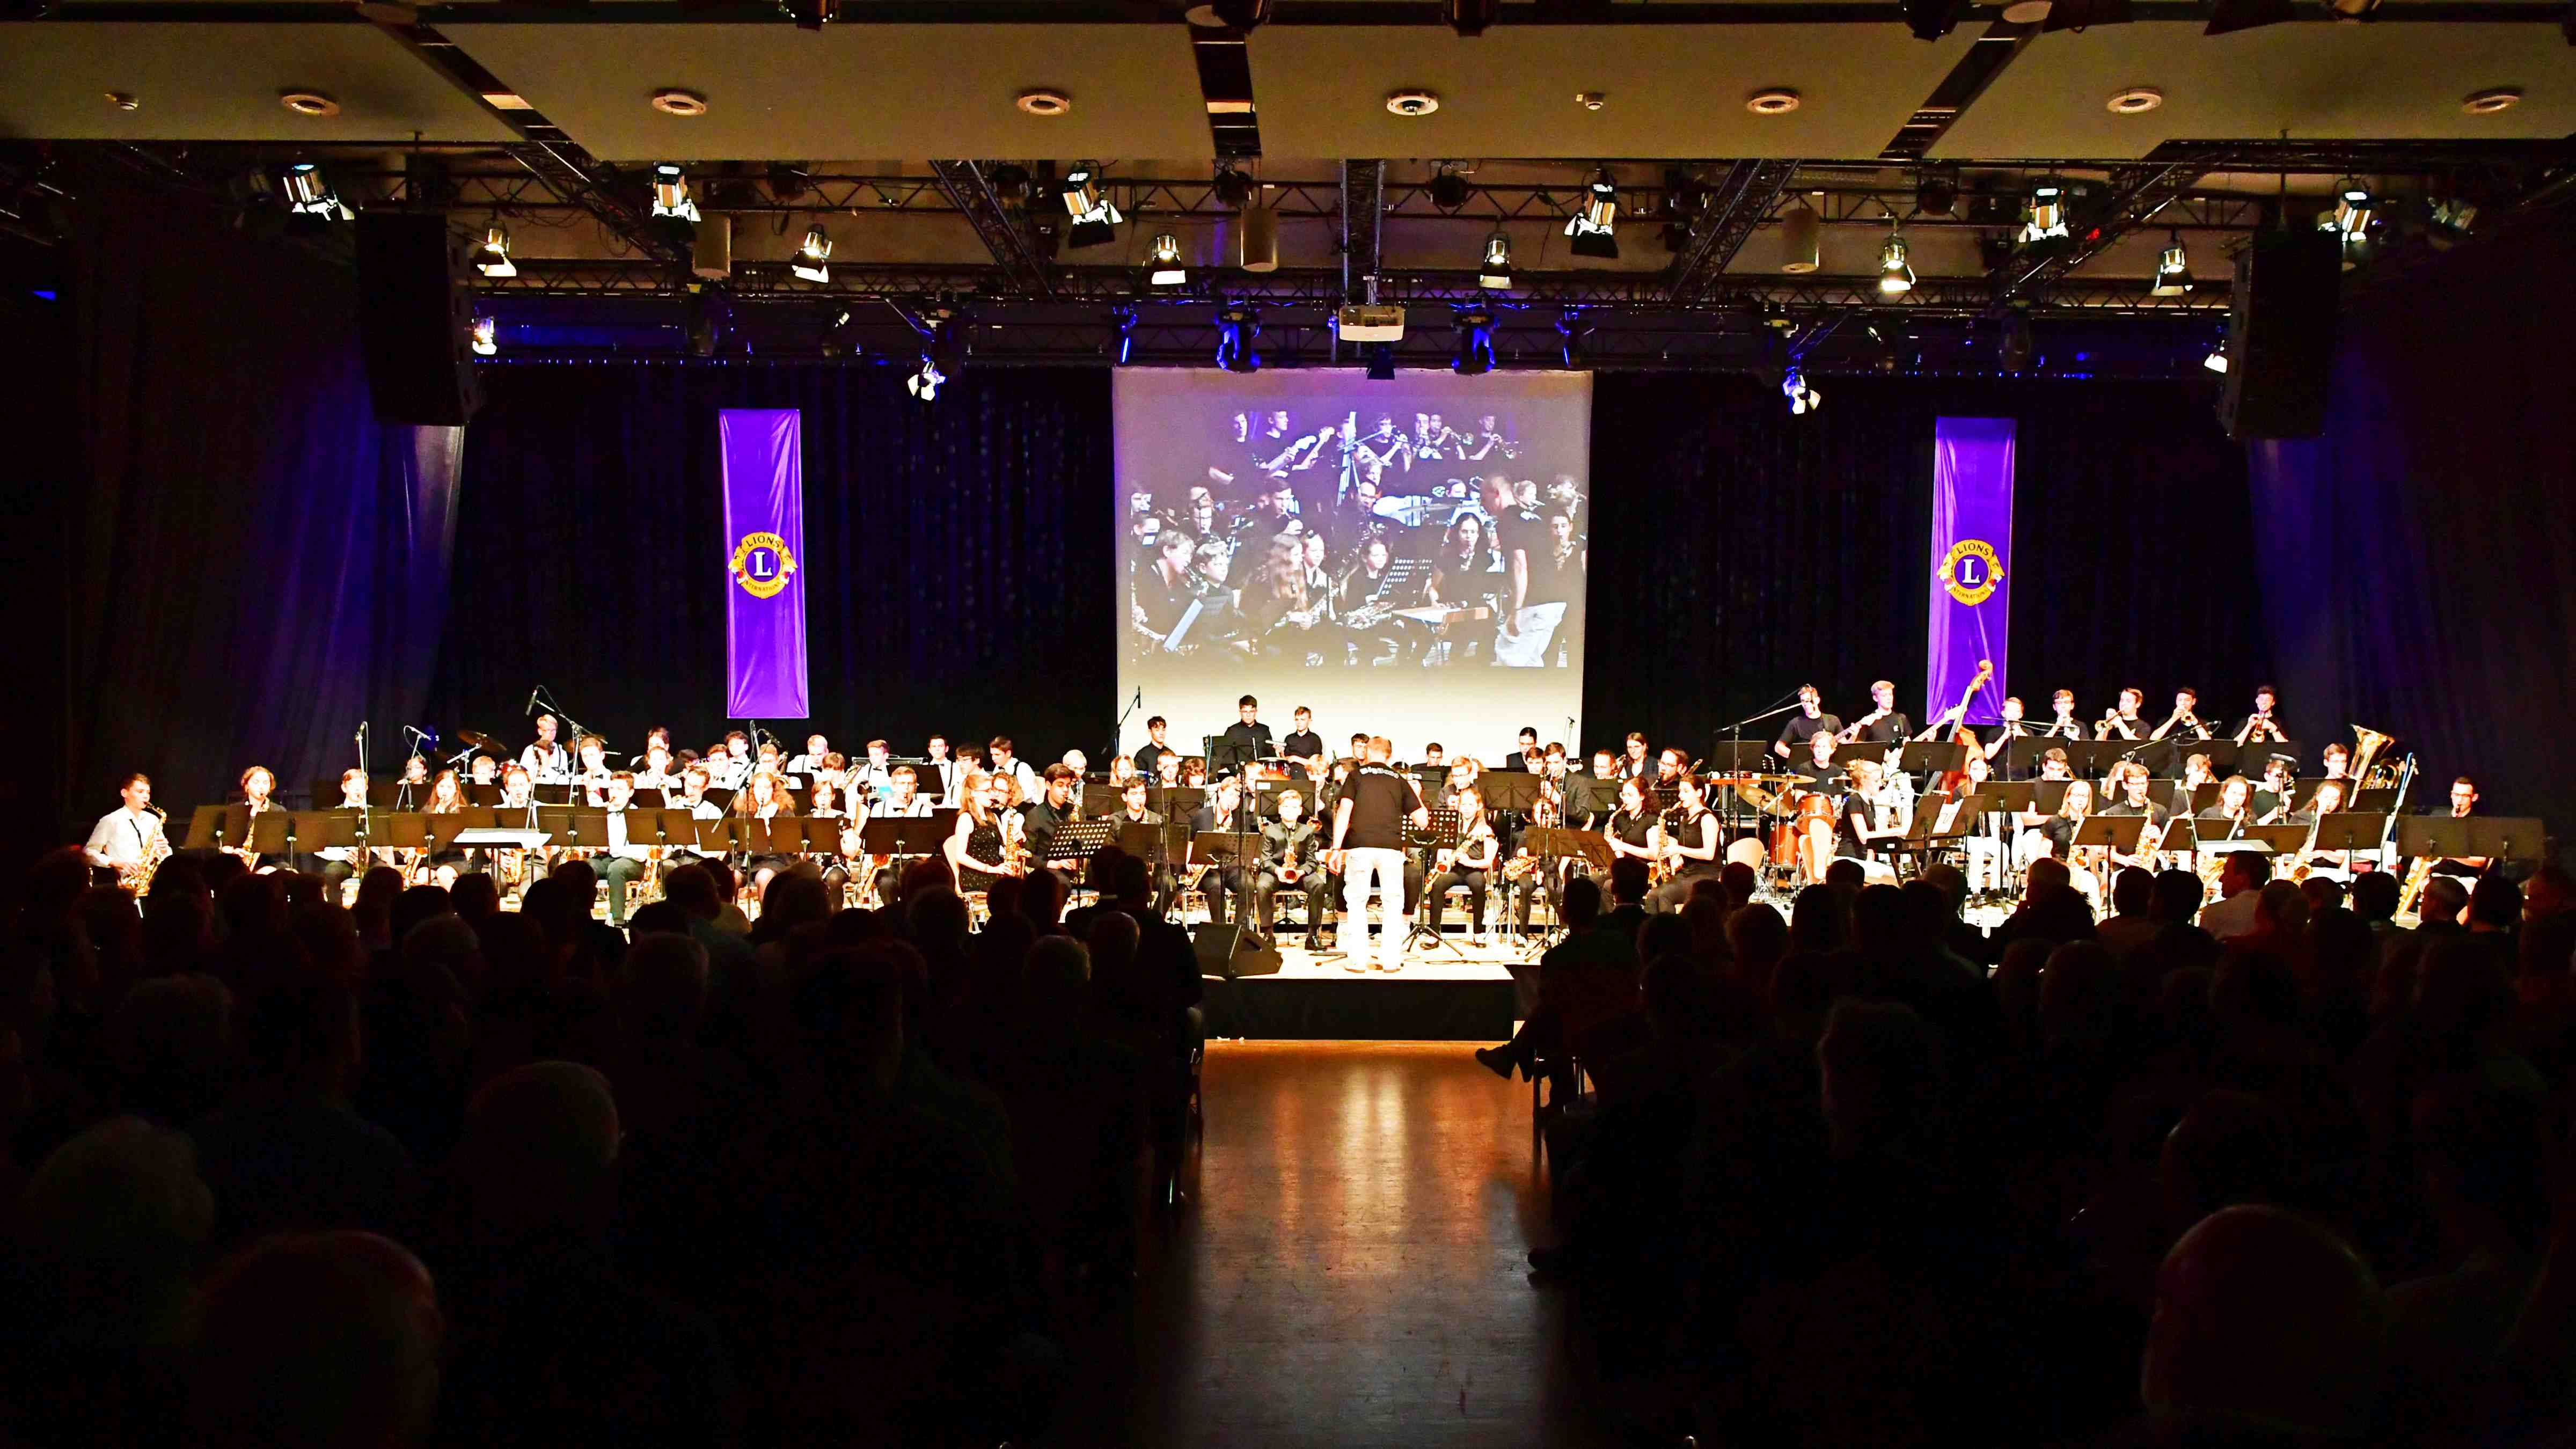 Das Foto zeigt die Musiker der Bigbands im Scheinwerferlicht auf der Bühne sowie die Zuhörer auf ihren Stühlen.